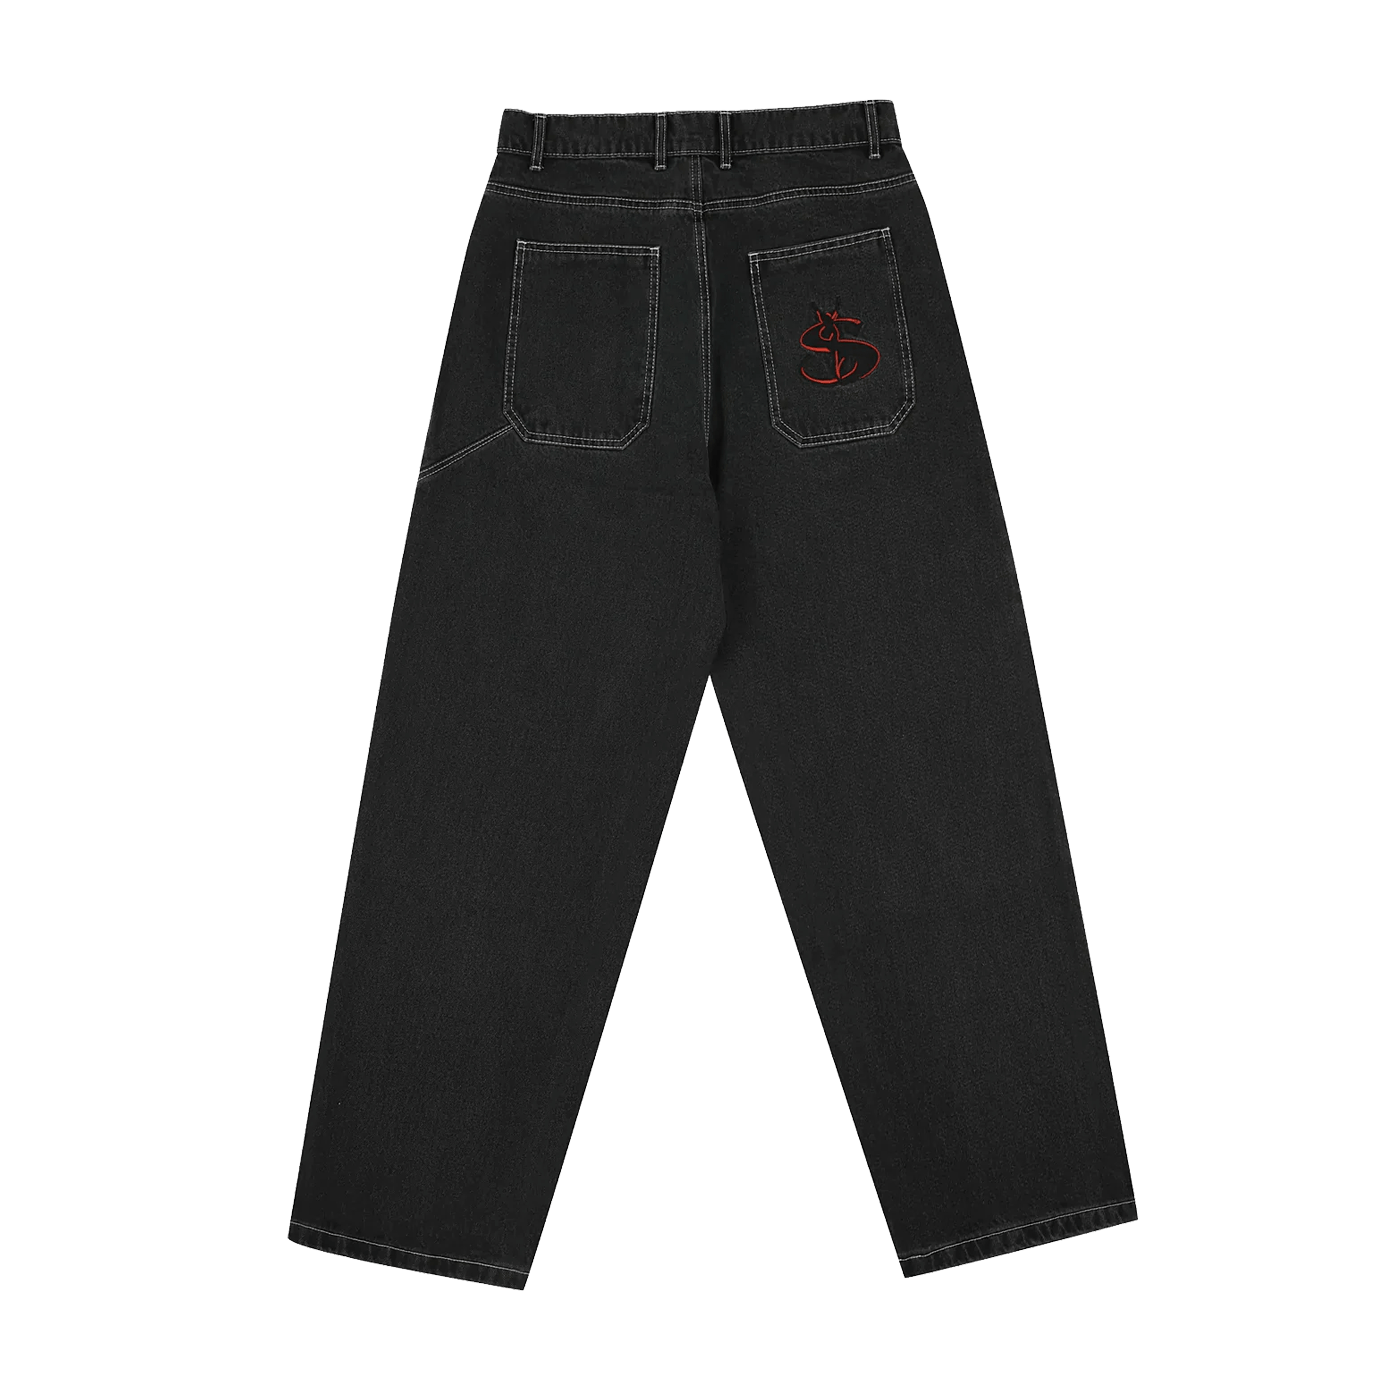 yardsale phantasy jeans black - デニム/ジーンズ